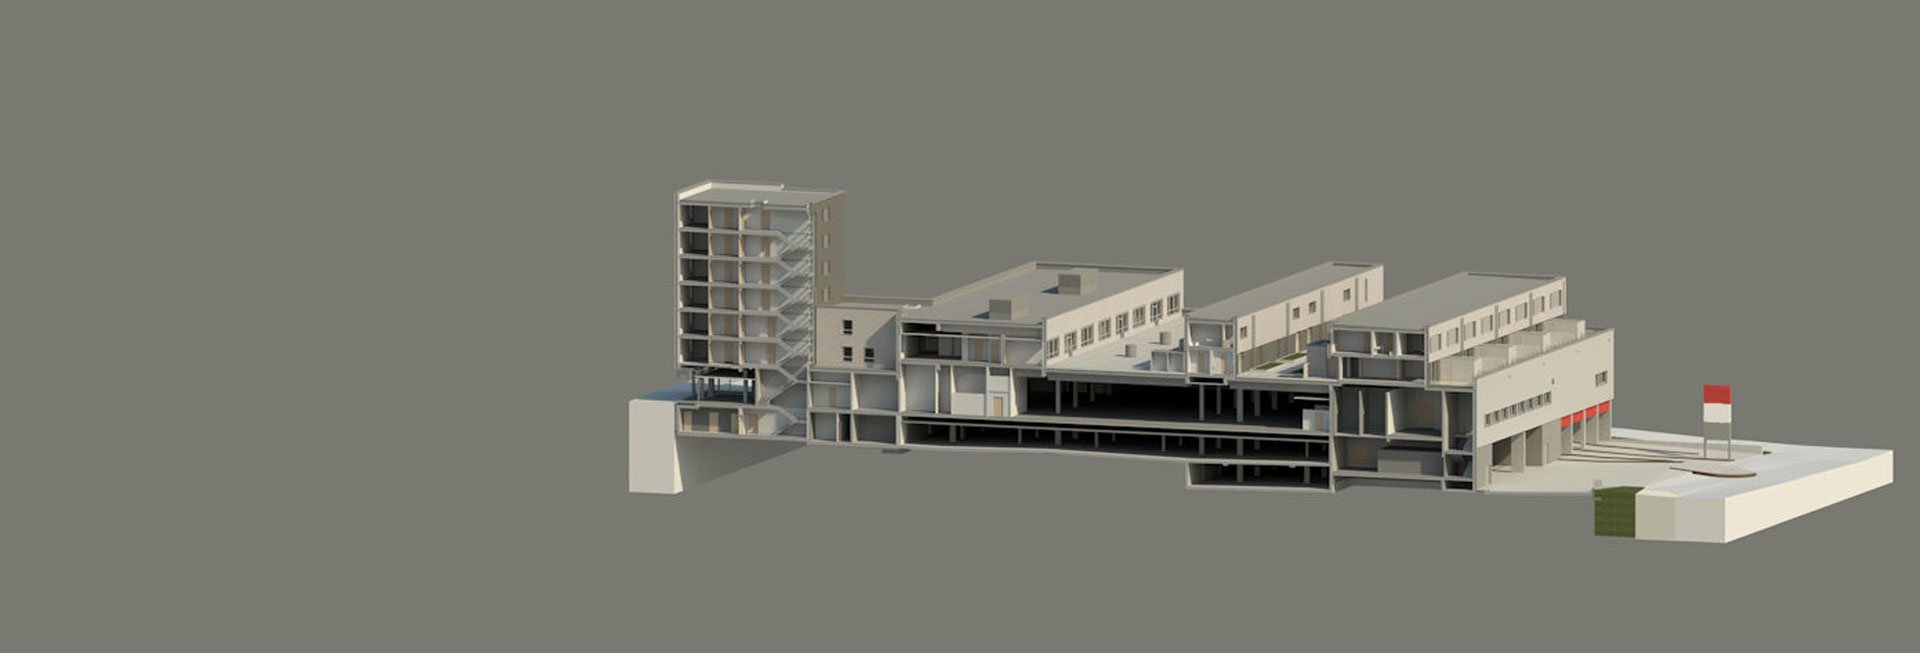 Modell eines Gebäudekomplexes.